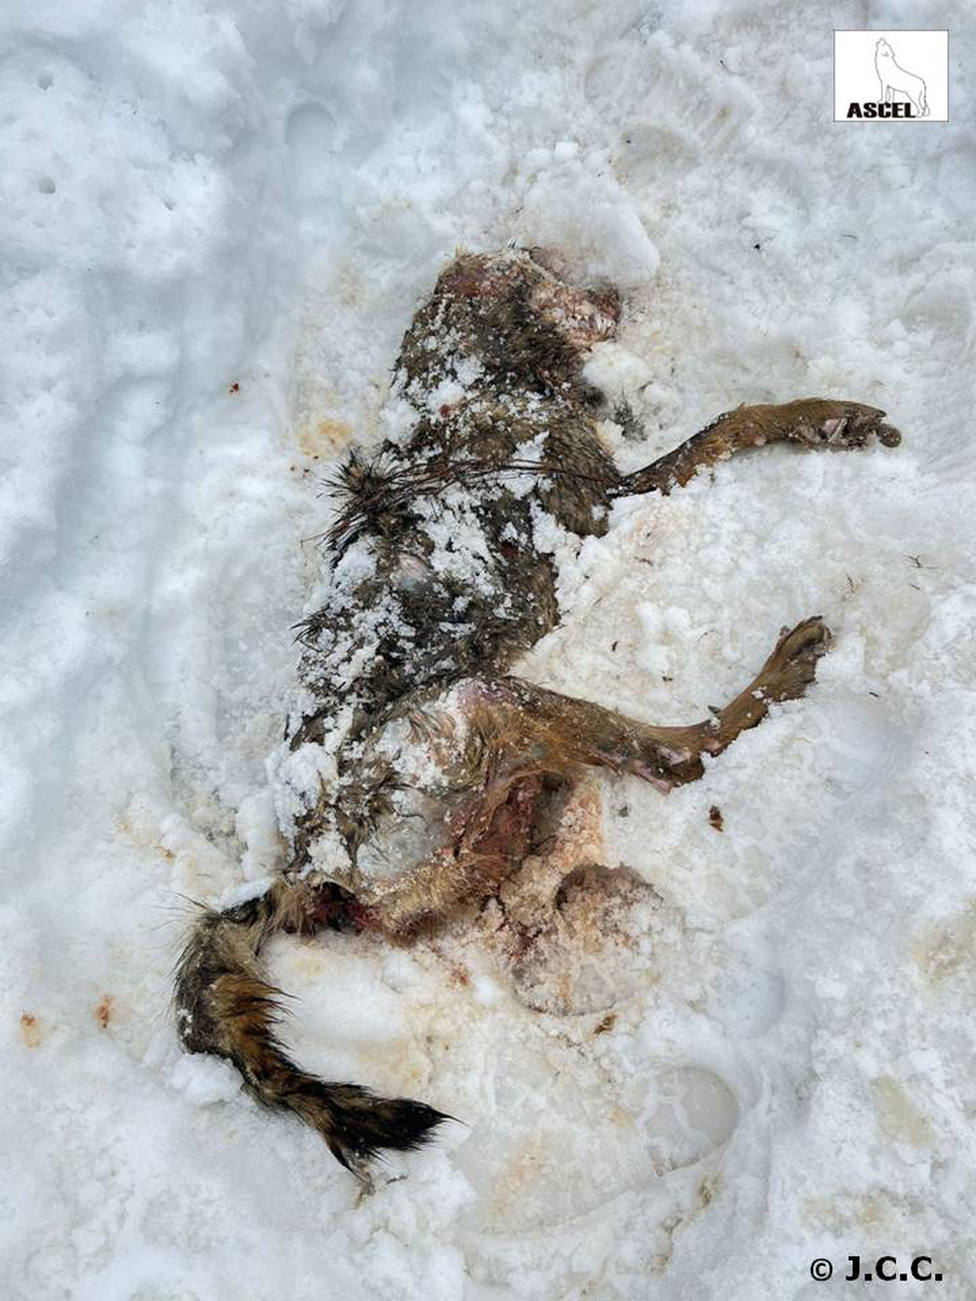 ASCEL denuncia la aparición de una loba muerta por disparo en Burgos